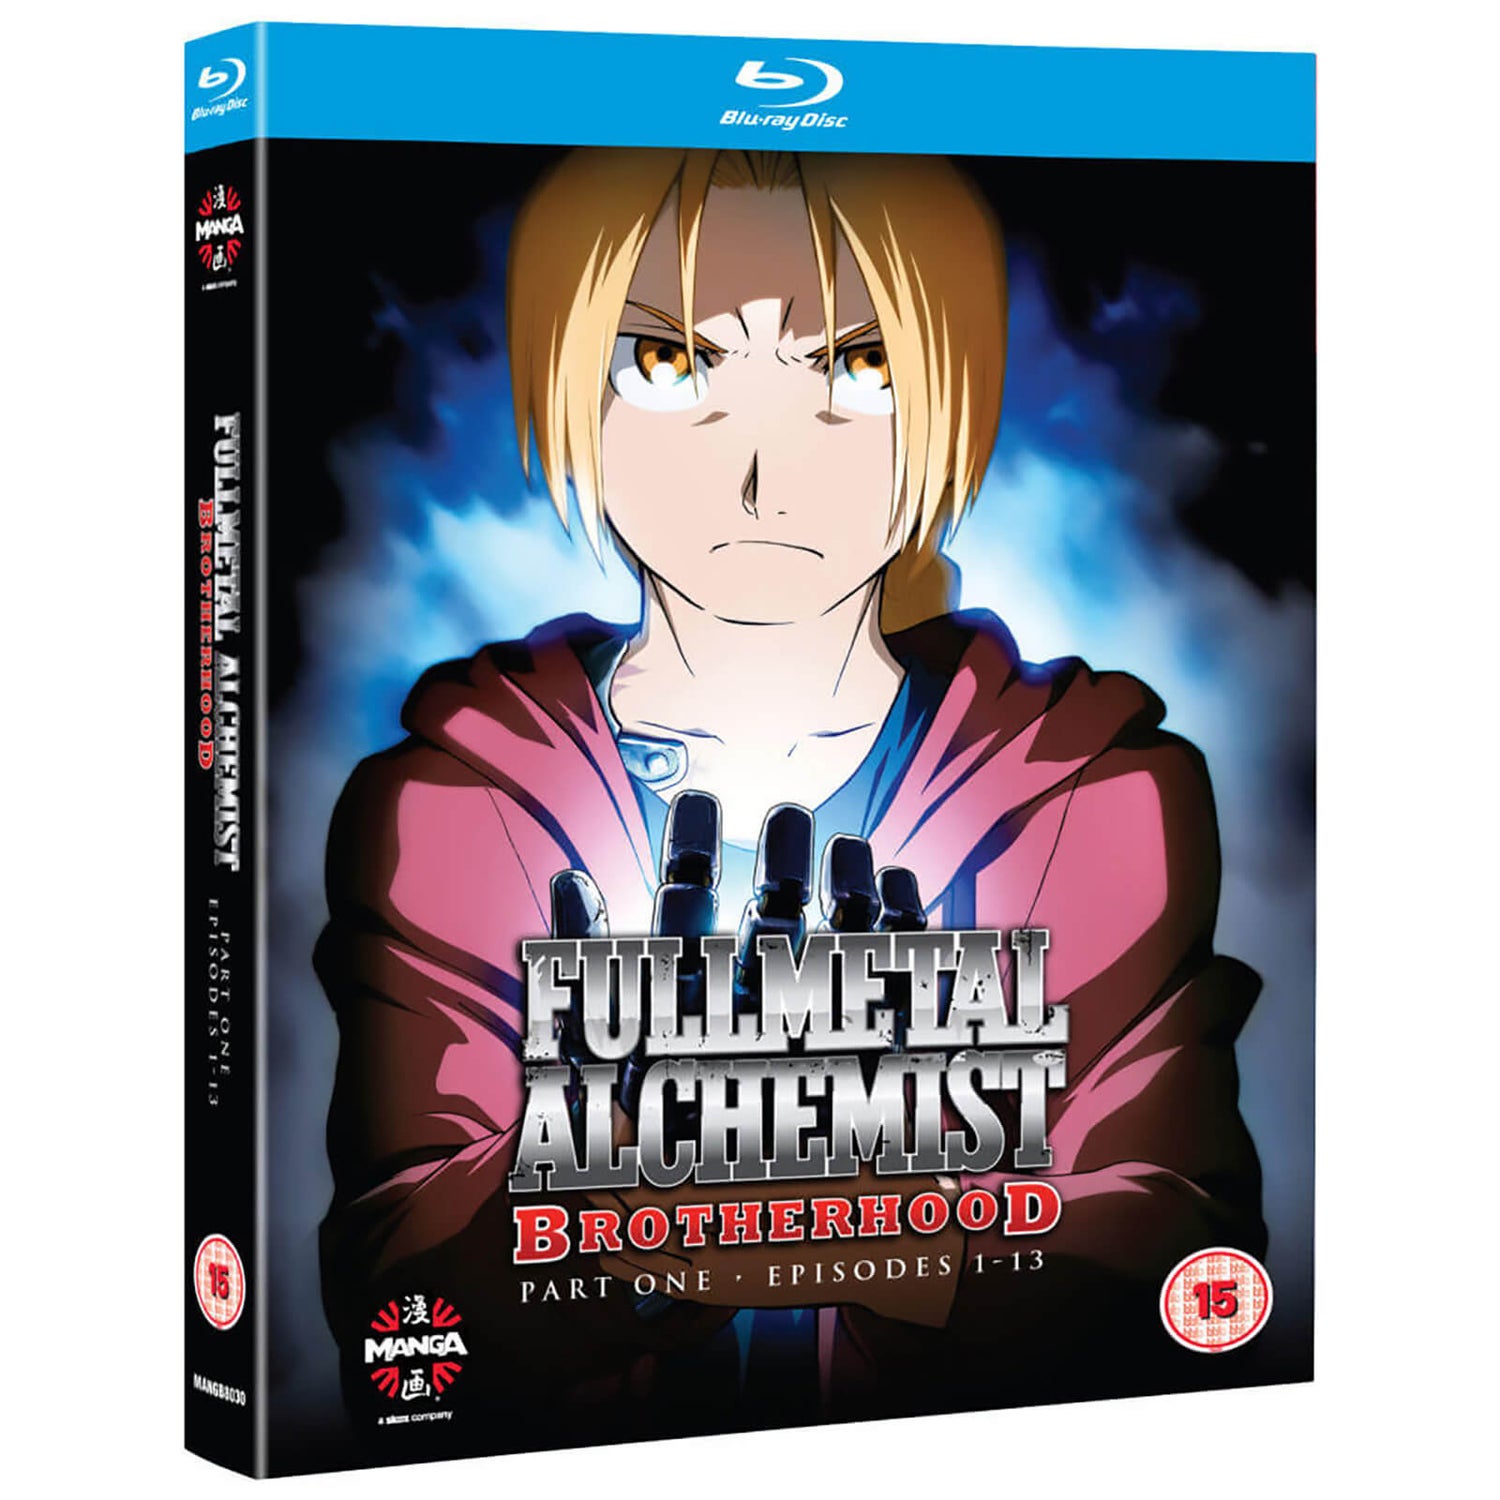 Fullmetal Alchemist Brotherhood One (Episodes 1-13) Blu-ray - Zavvi UK